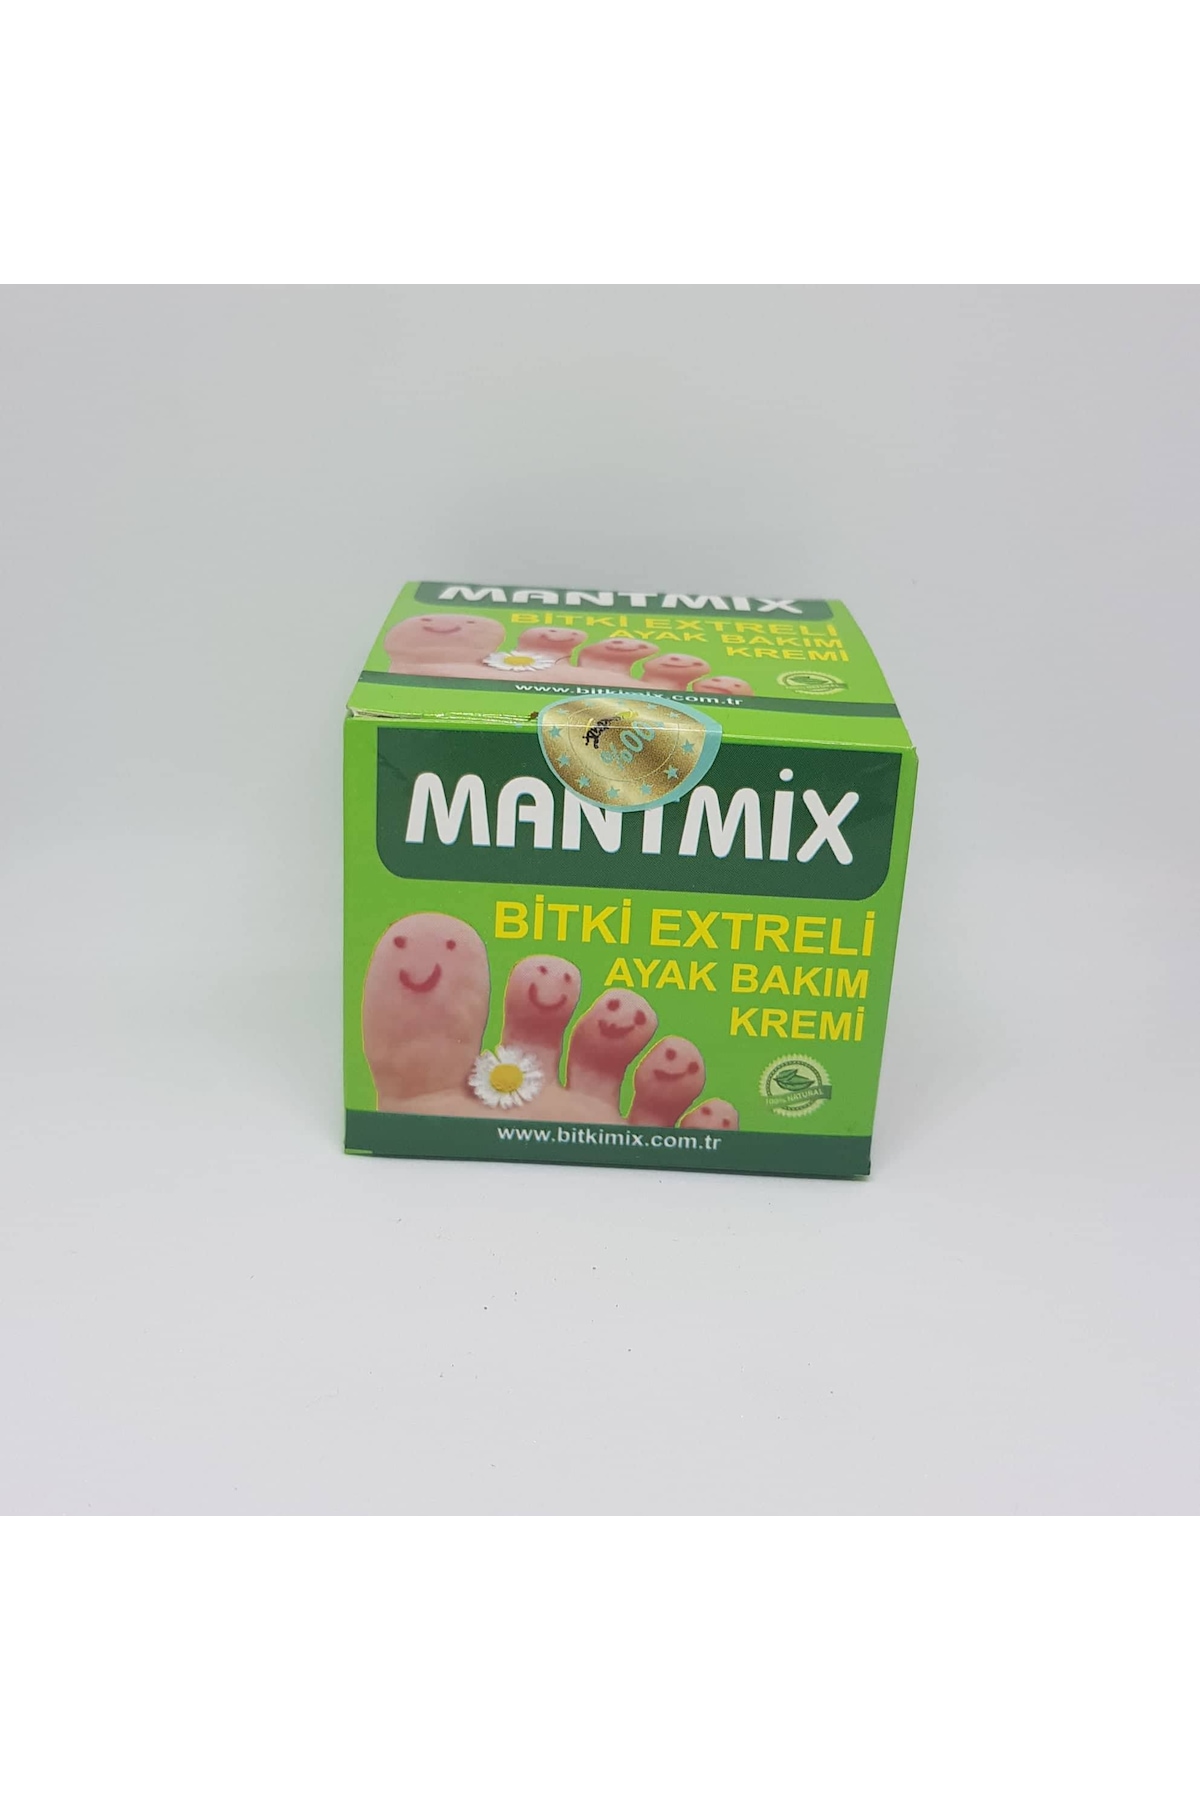 Mantmix mantar ayak bakım kremi 50cc Fiyatları ve Özellikleri